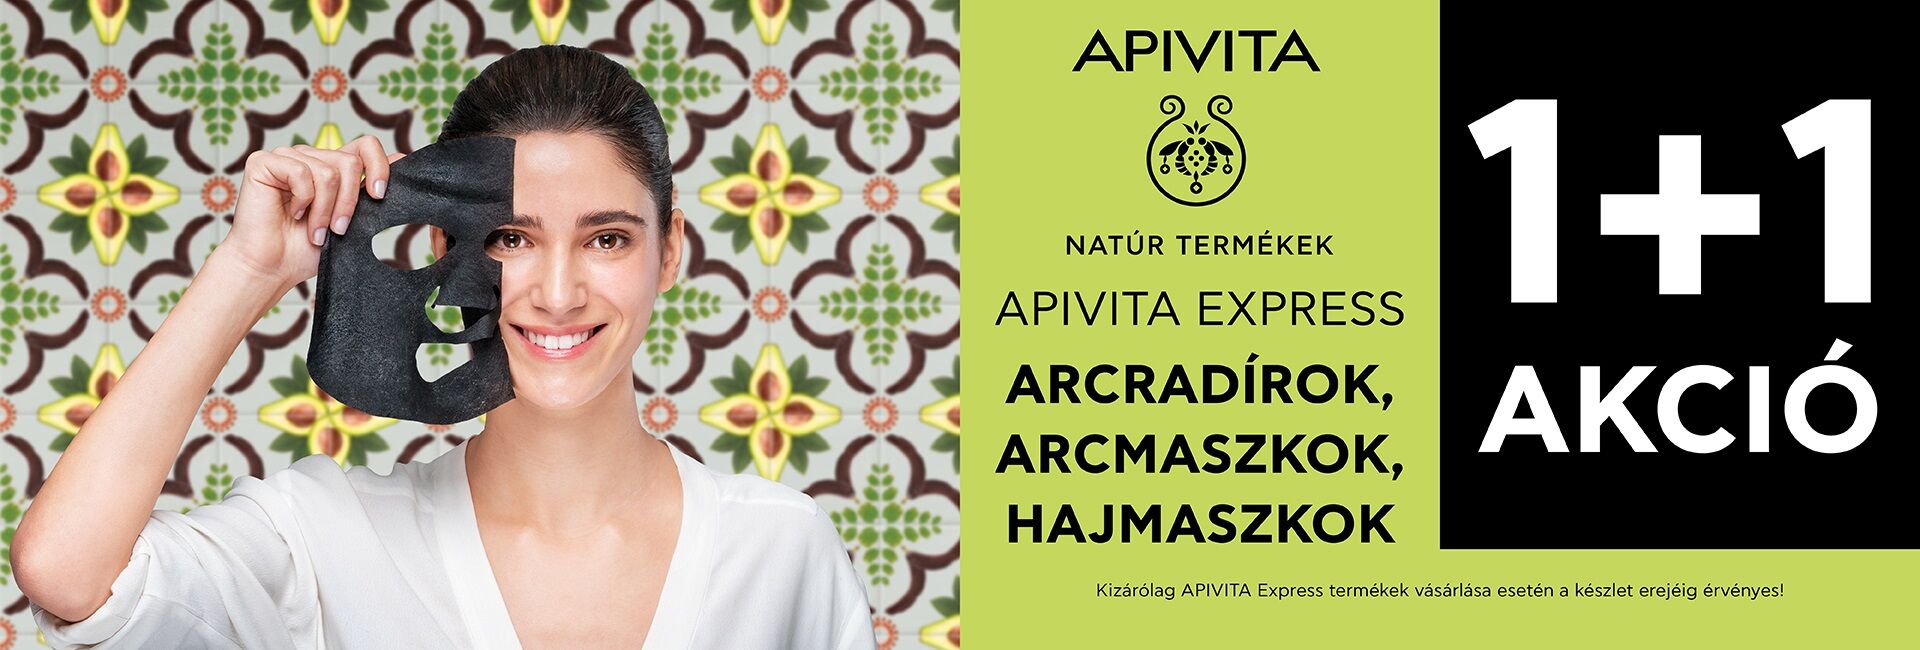 2021. január 21. és március 31. közöt minden Apivita Express Beauty termék mellé választható Apivita arcmaszkor/arcredírt/hajmaszkot adunk ajándékba!! 